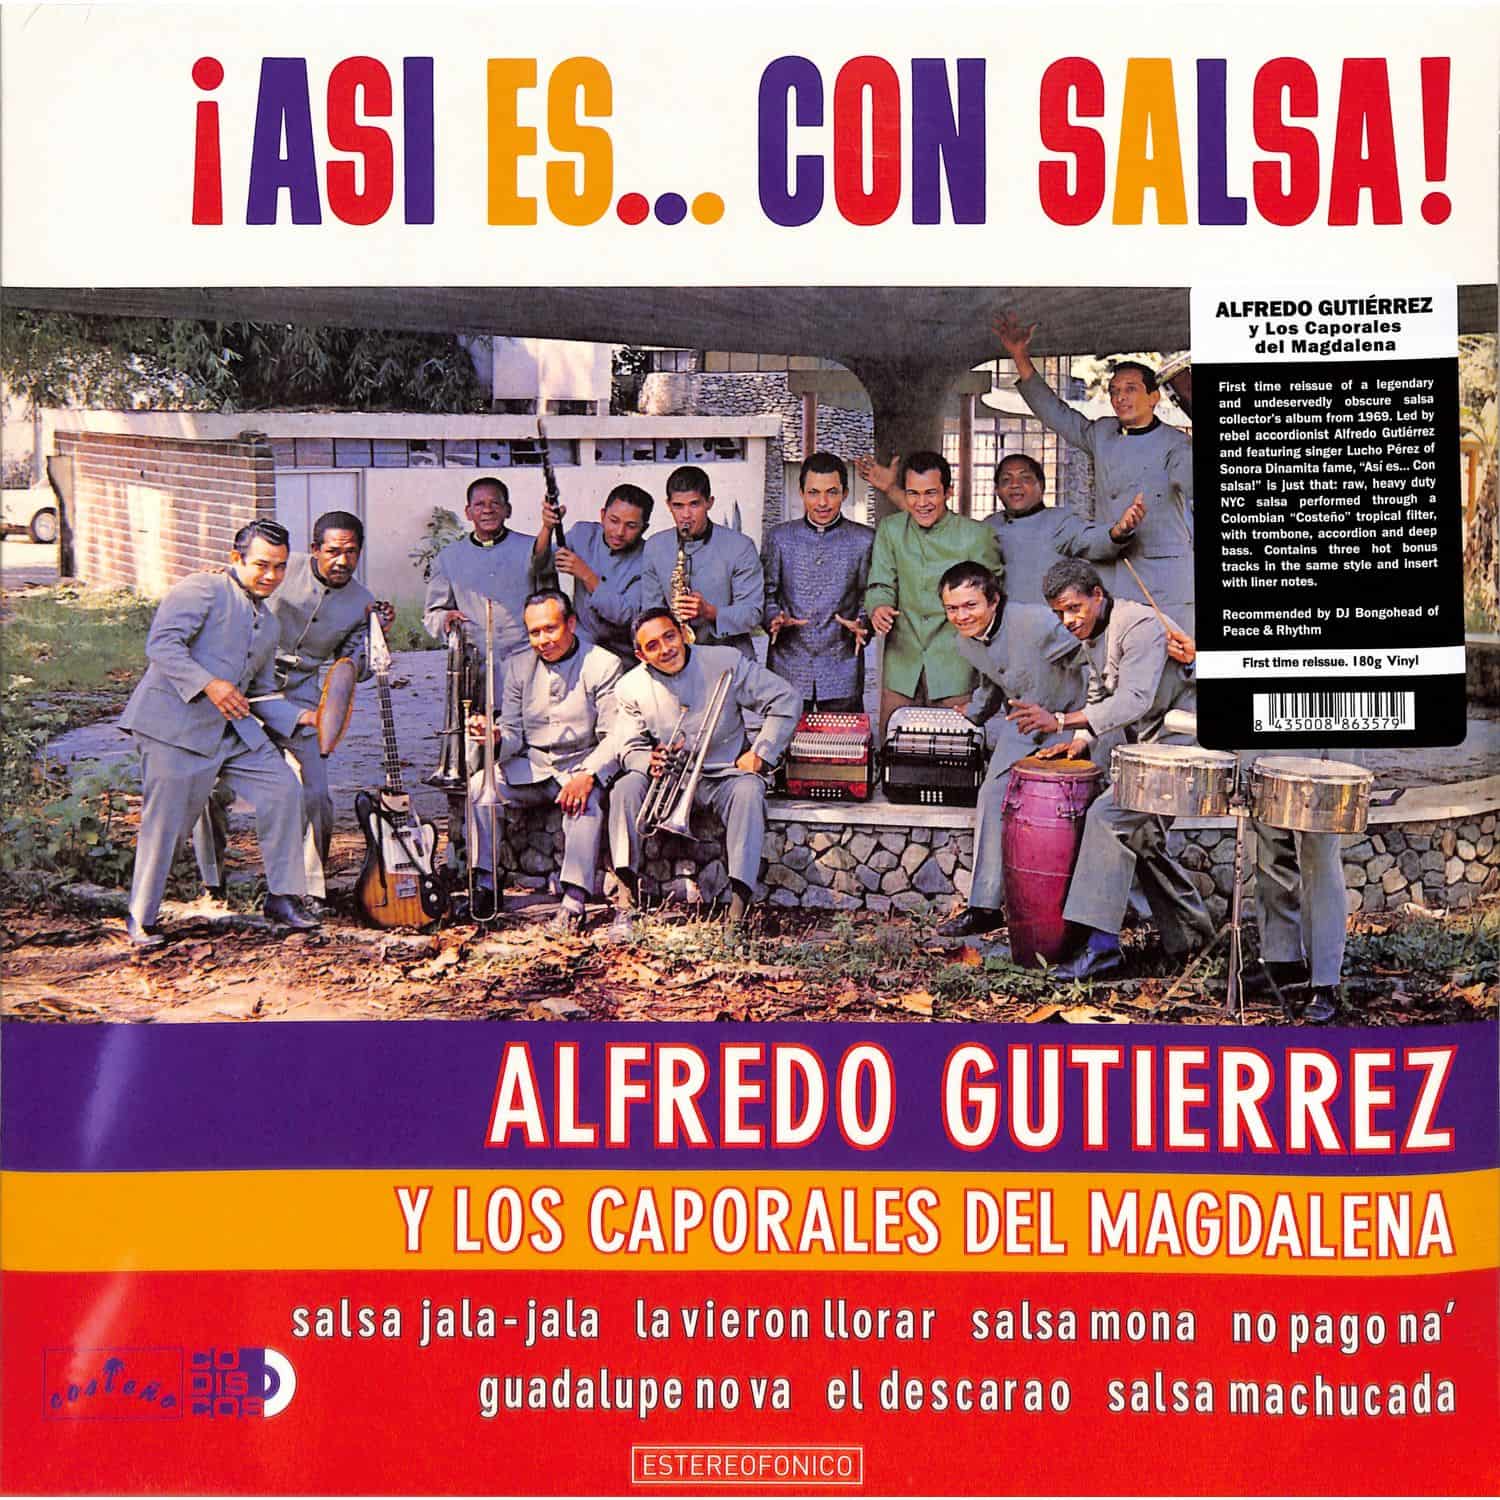 Alfredo Gutierrez Y Los Caporales Del Magdalena - ASI ES...CON SALSA! 